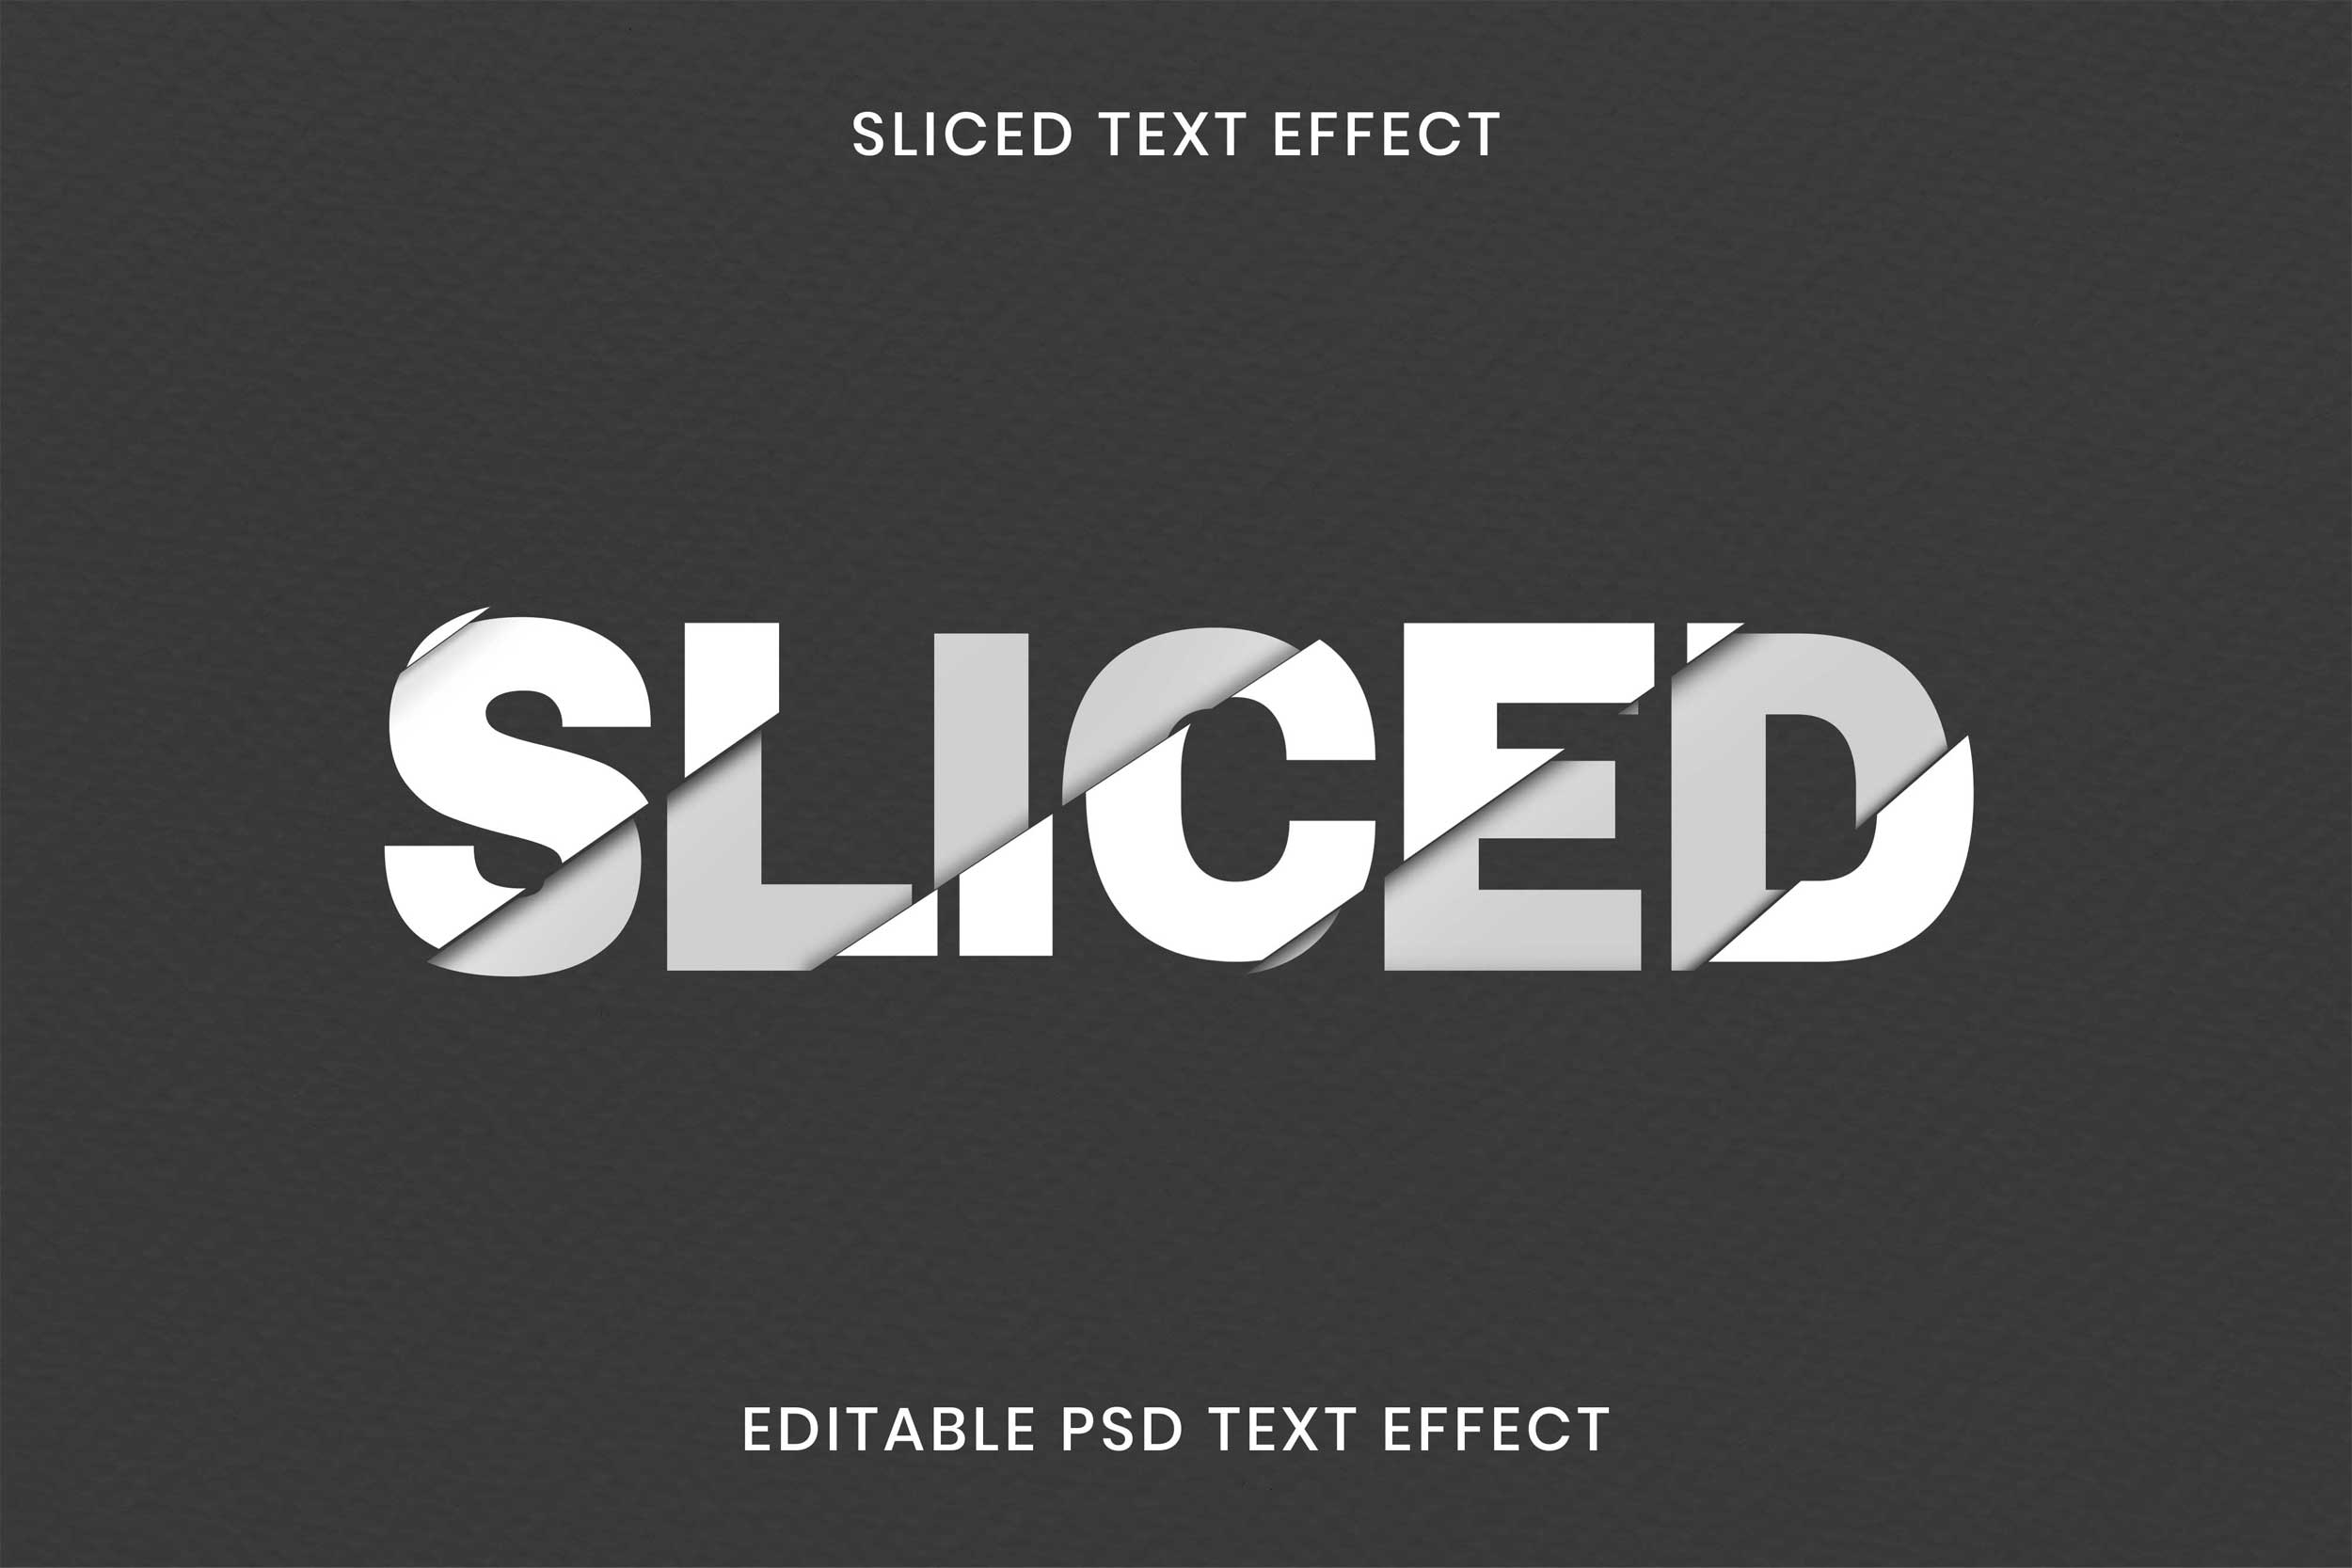 Tải text effect illustrator, hiệu ứng chữ trong AI